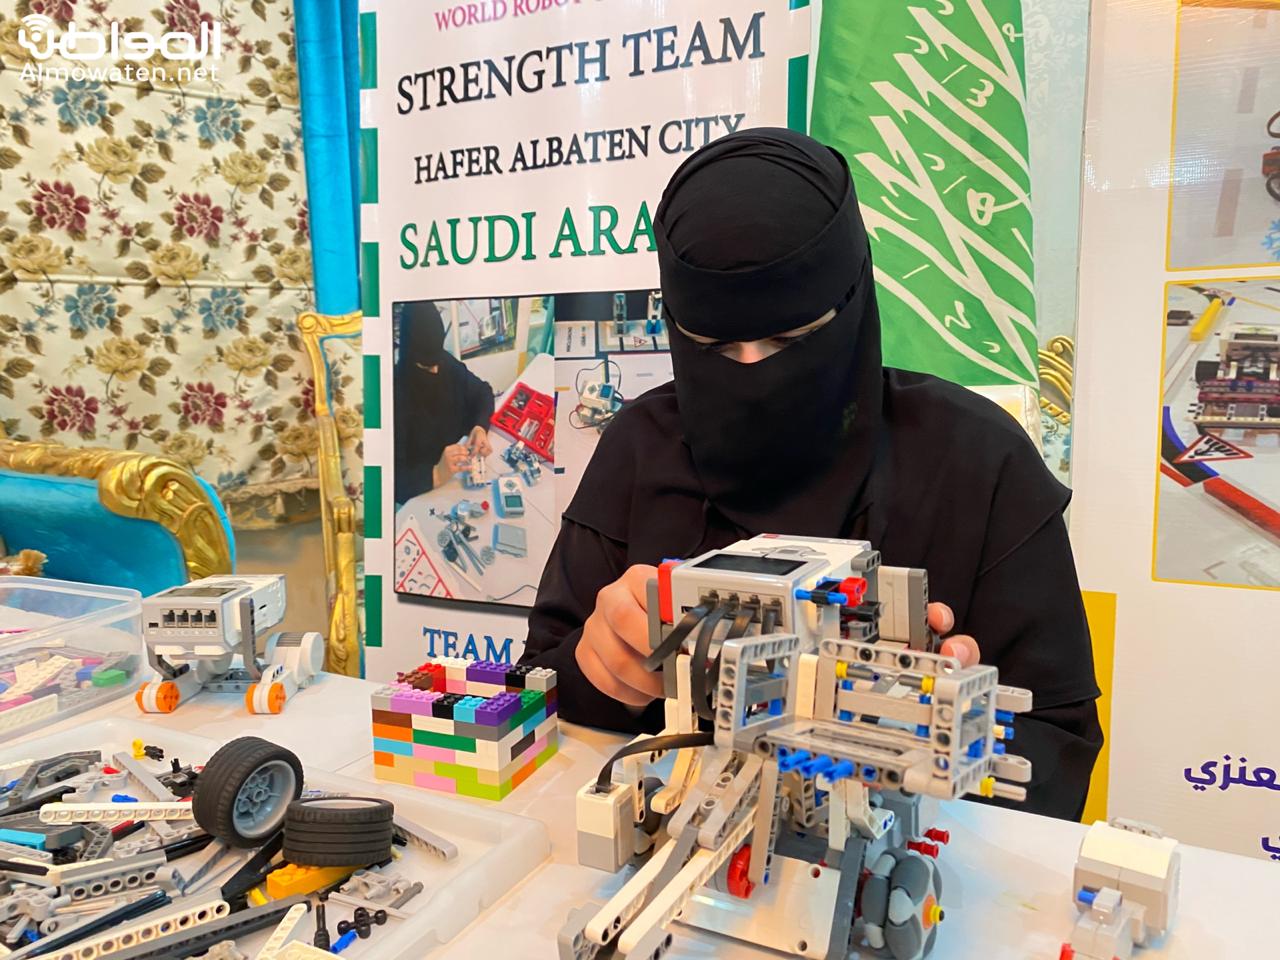 ليان الظفيري ممثل السعودية بأولمبياد الروبوت: سأحقق المركز الذي يليق بي